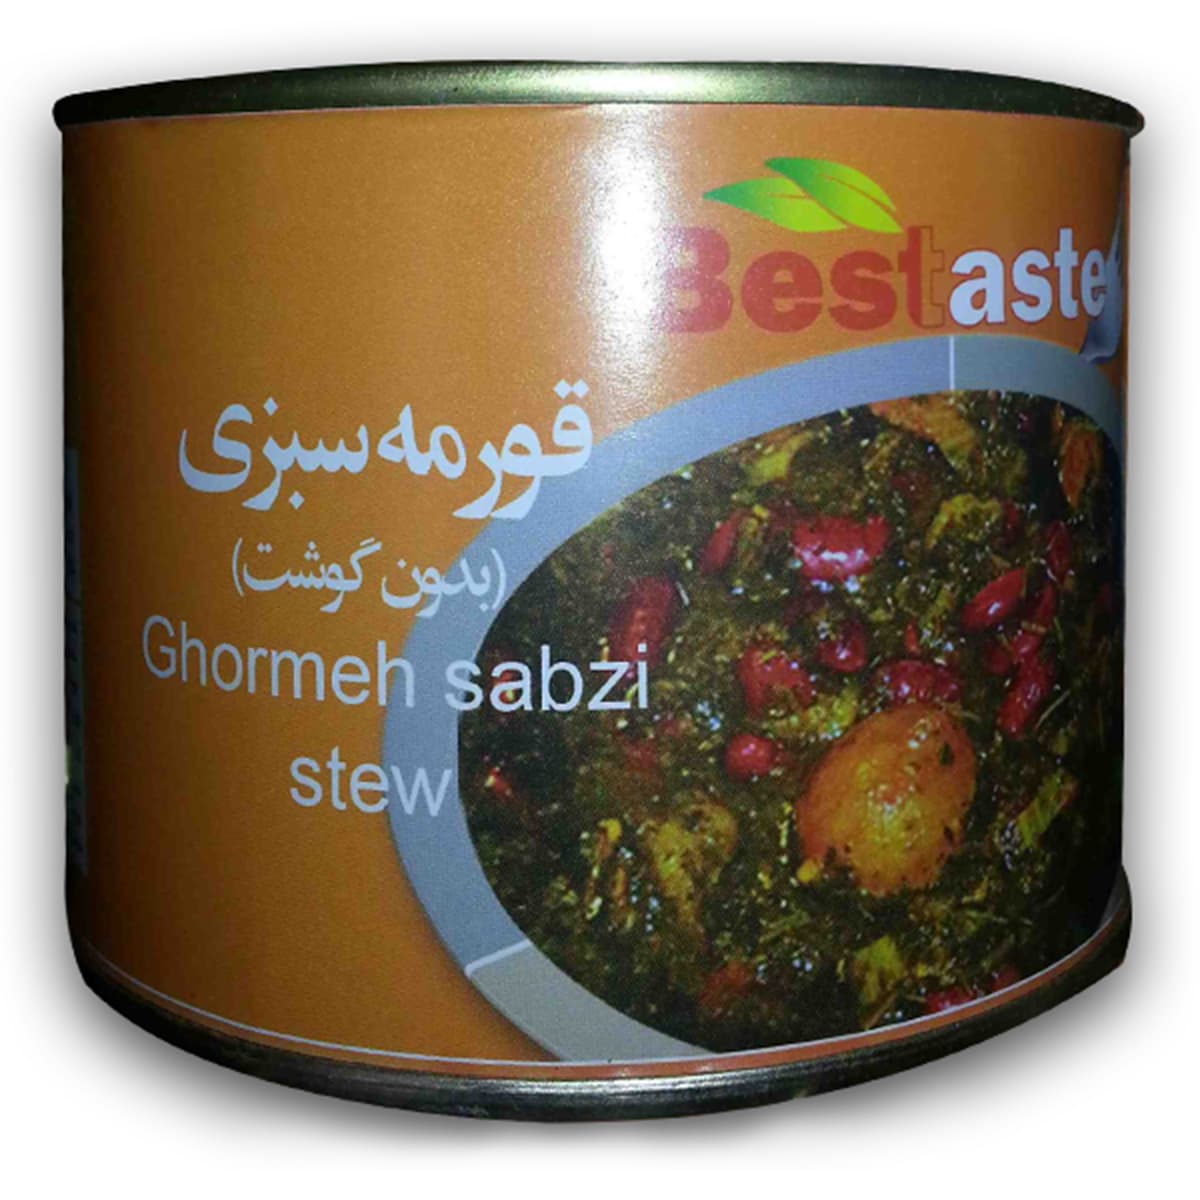 Buy Bestaste Ghormeh Sabzi Stew - 450 gm